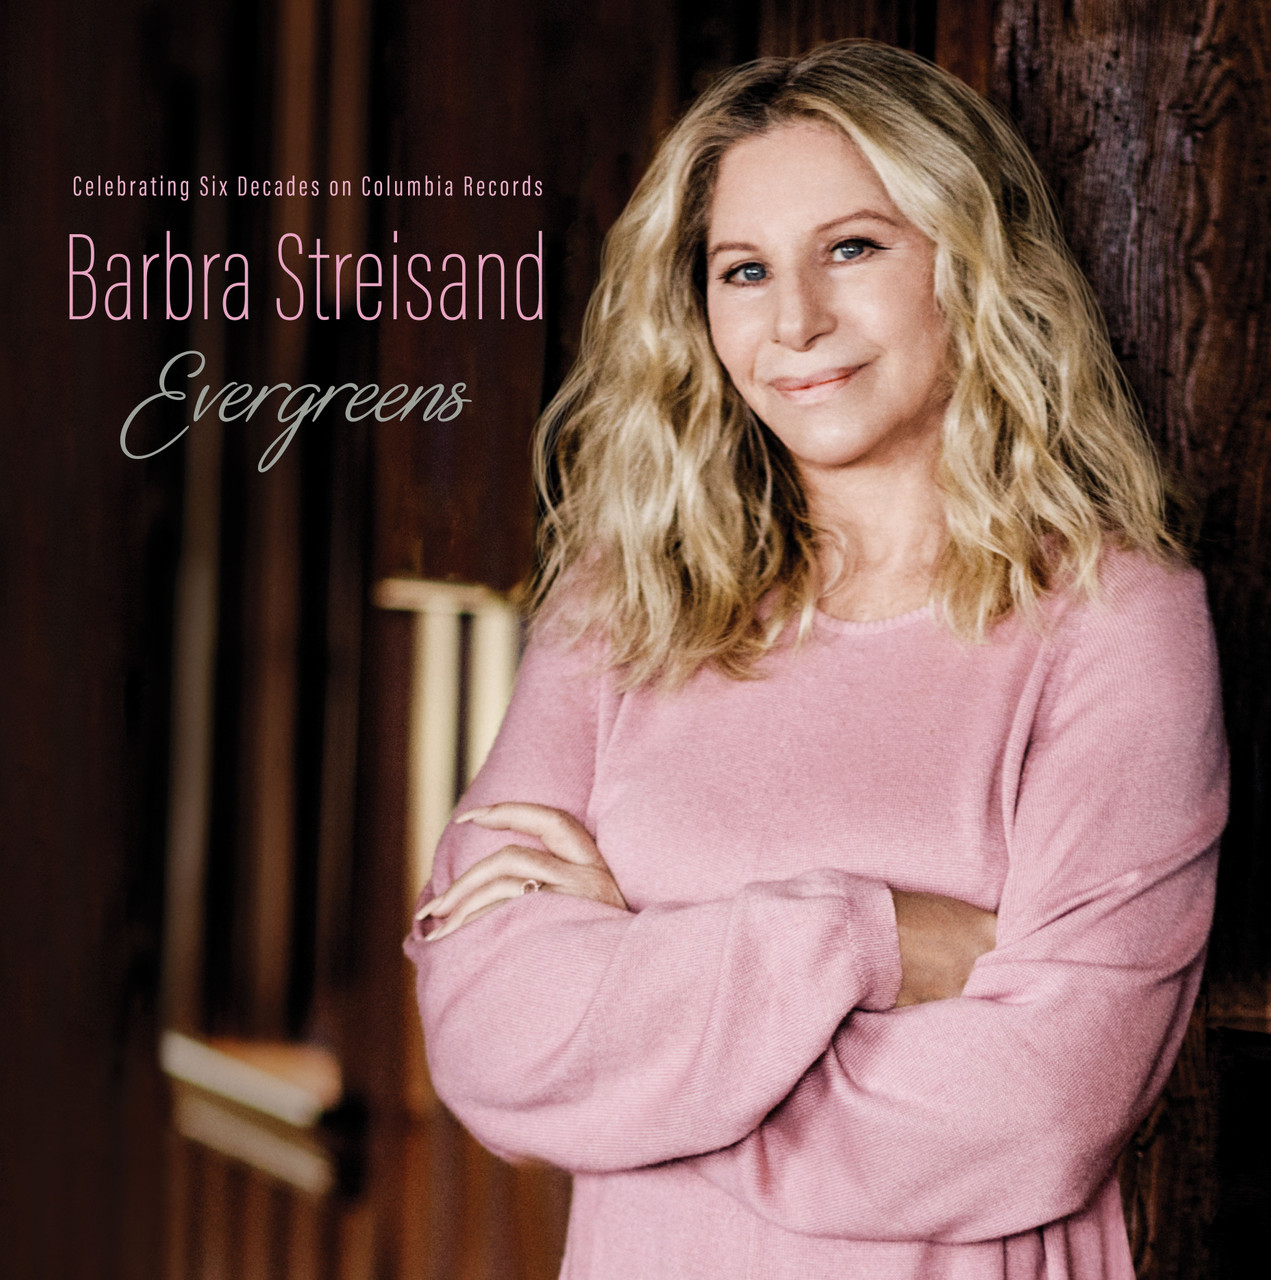 Vinile Barbra Streisand - Evergreens: Celebrating Six Decades On Columbia Records (2 Lp) NUOVO SIGILLATO, EDIZIONE DEL 27/10/2023 SUBITO DISPONIBILE